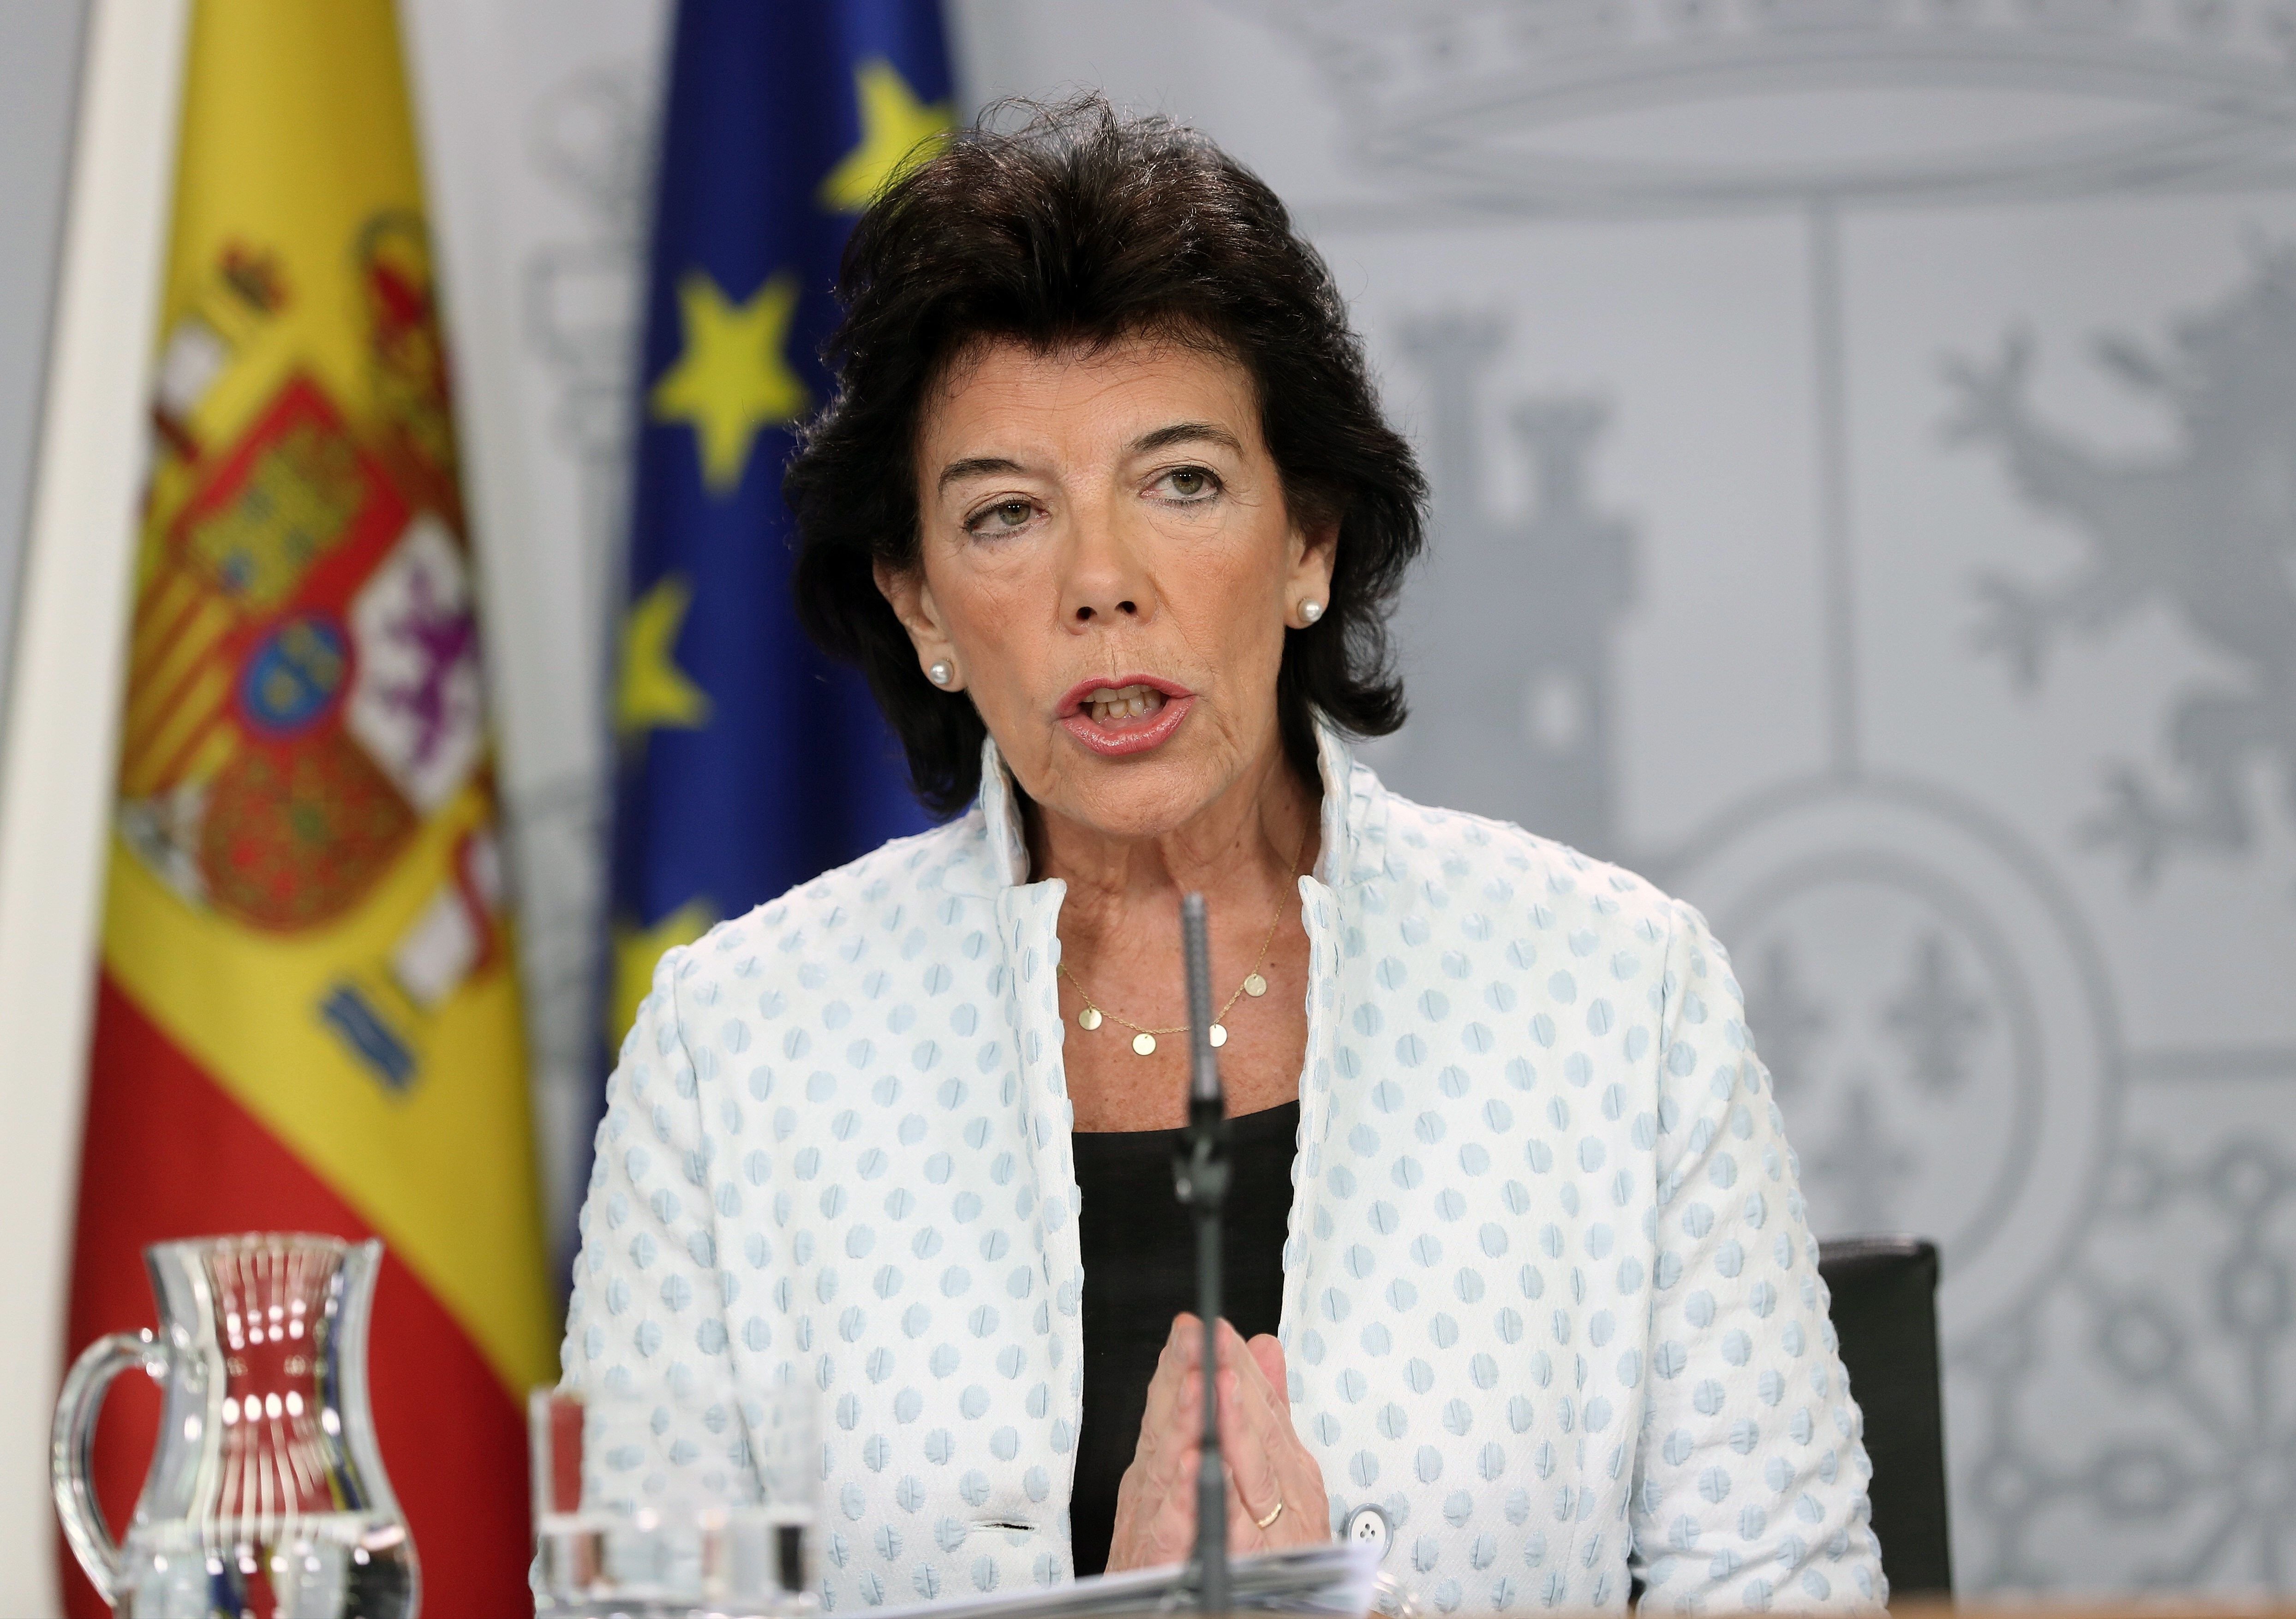 El govern espanyol porta als tribunals el pin parental de Múrcia